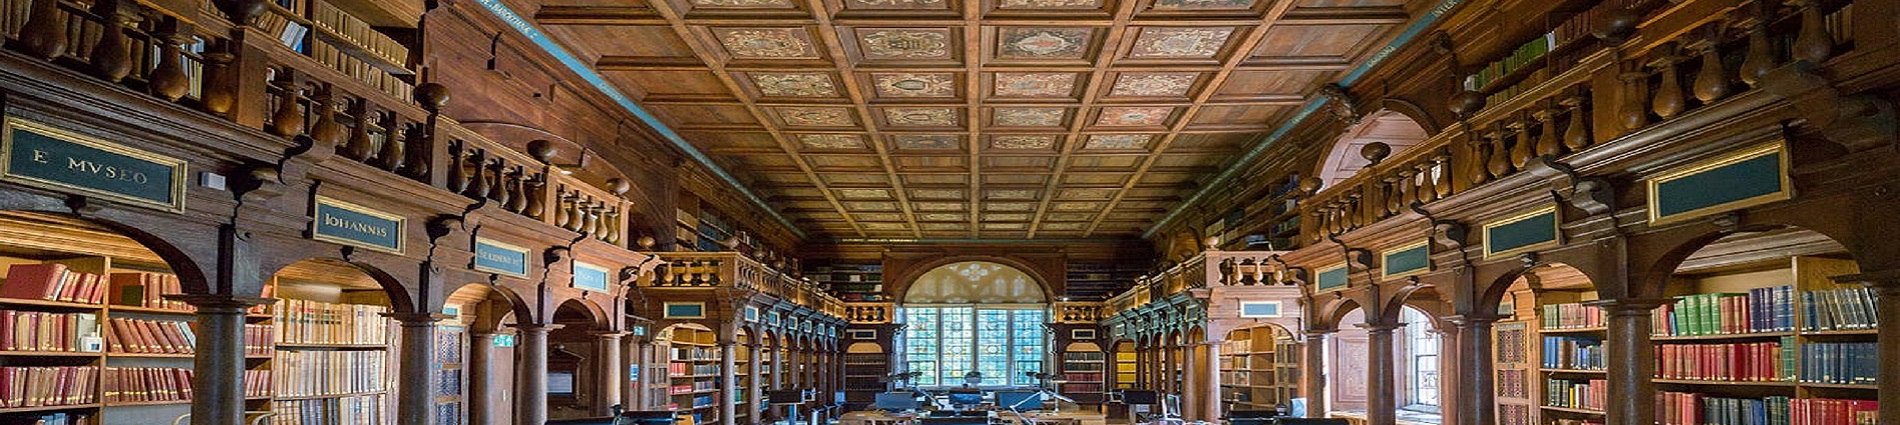 Uitsnede uit bibliotheek Oxford